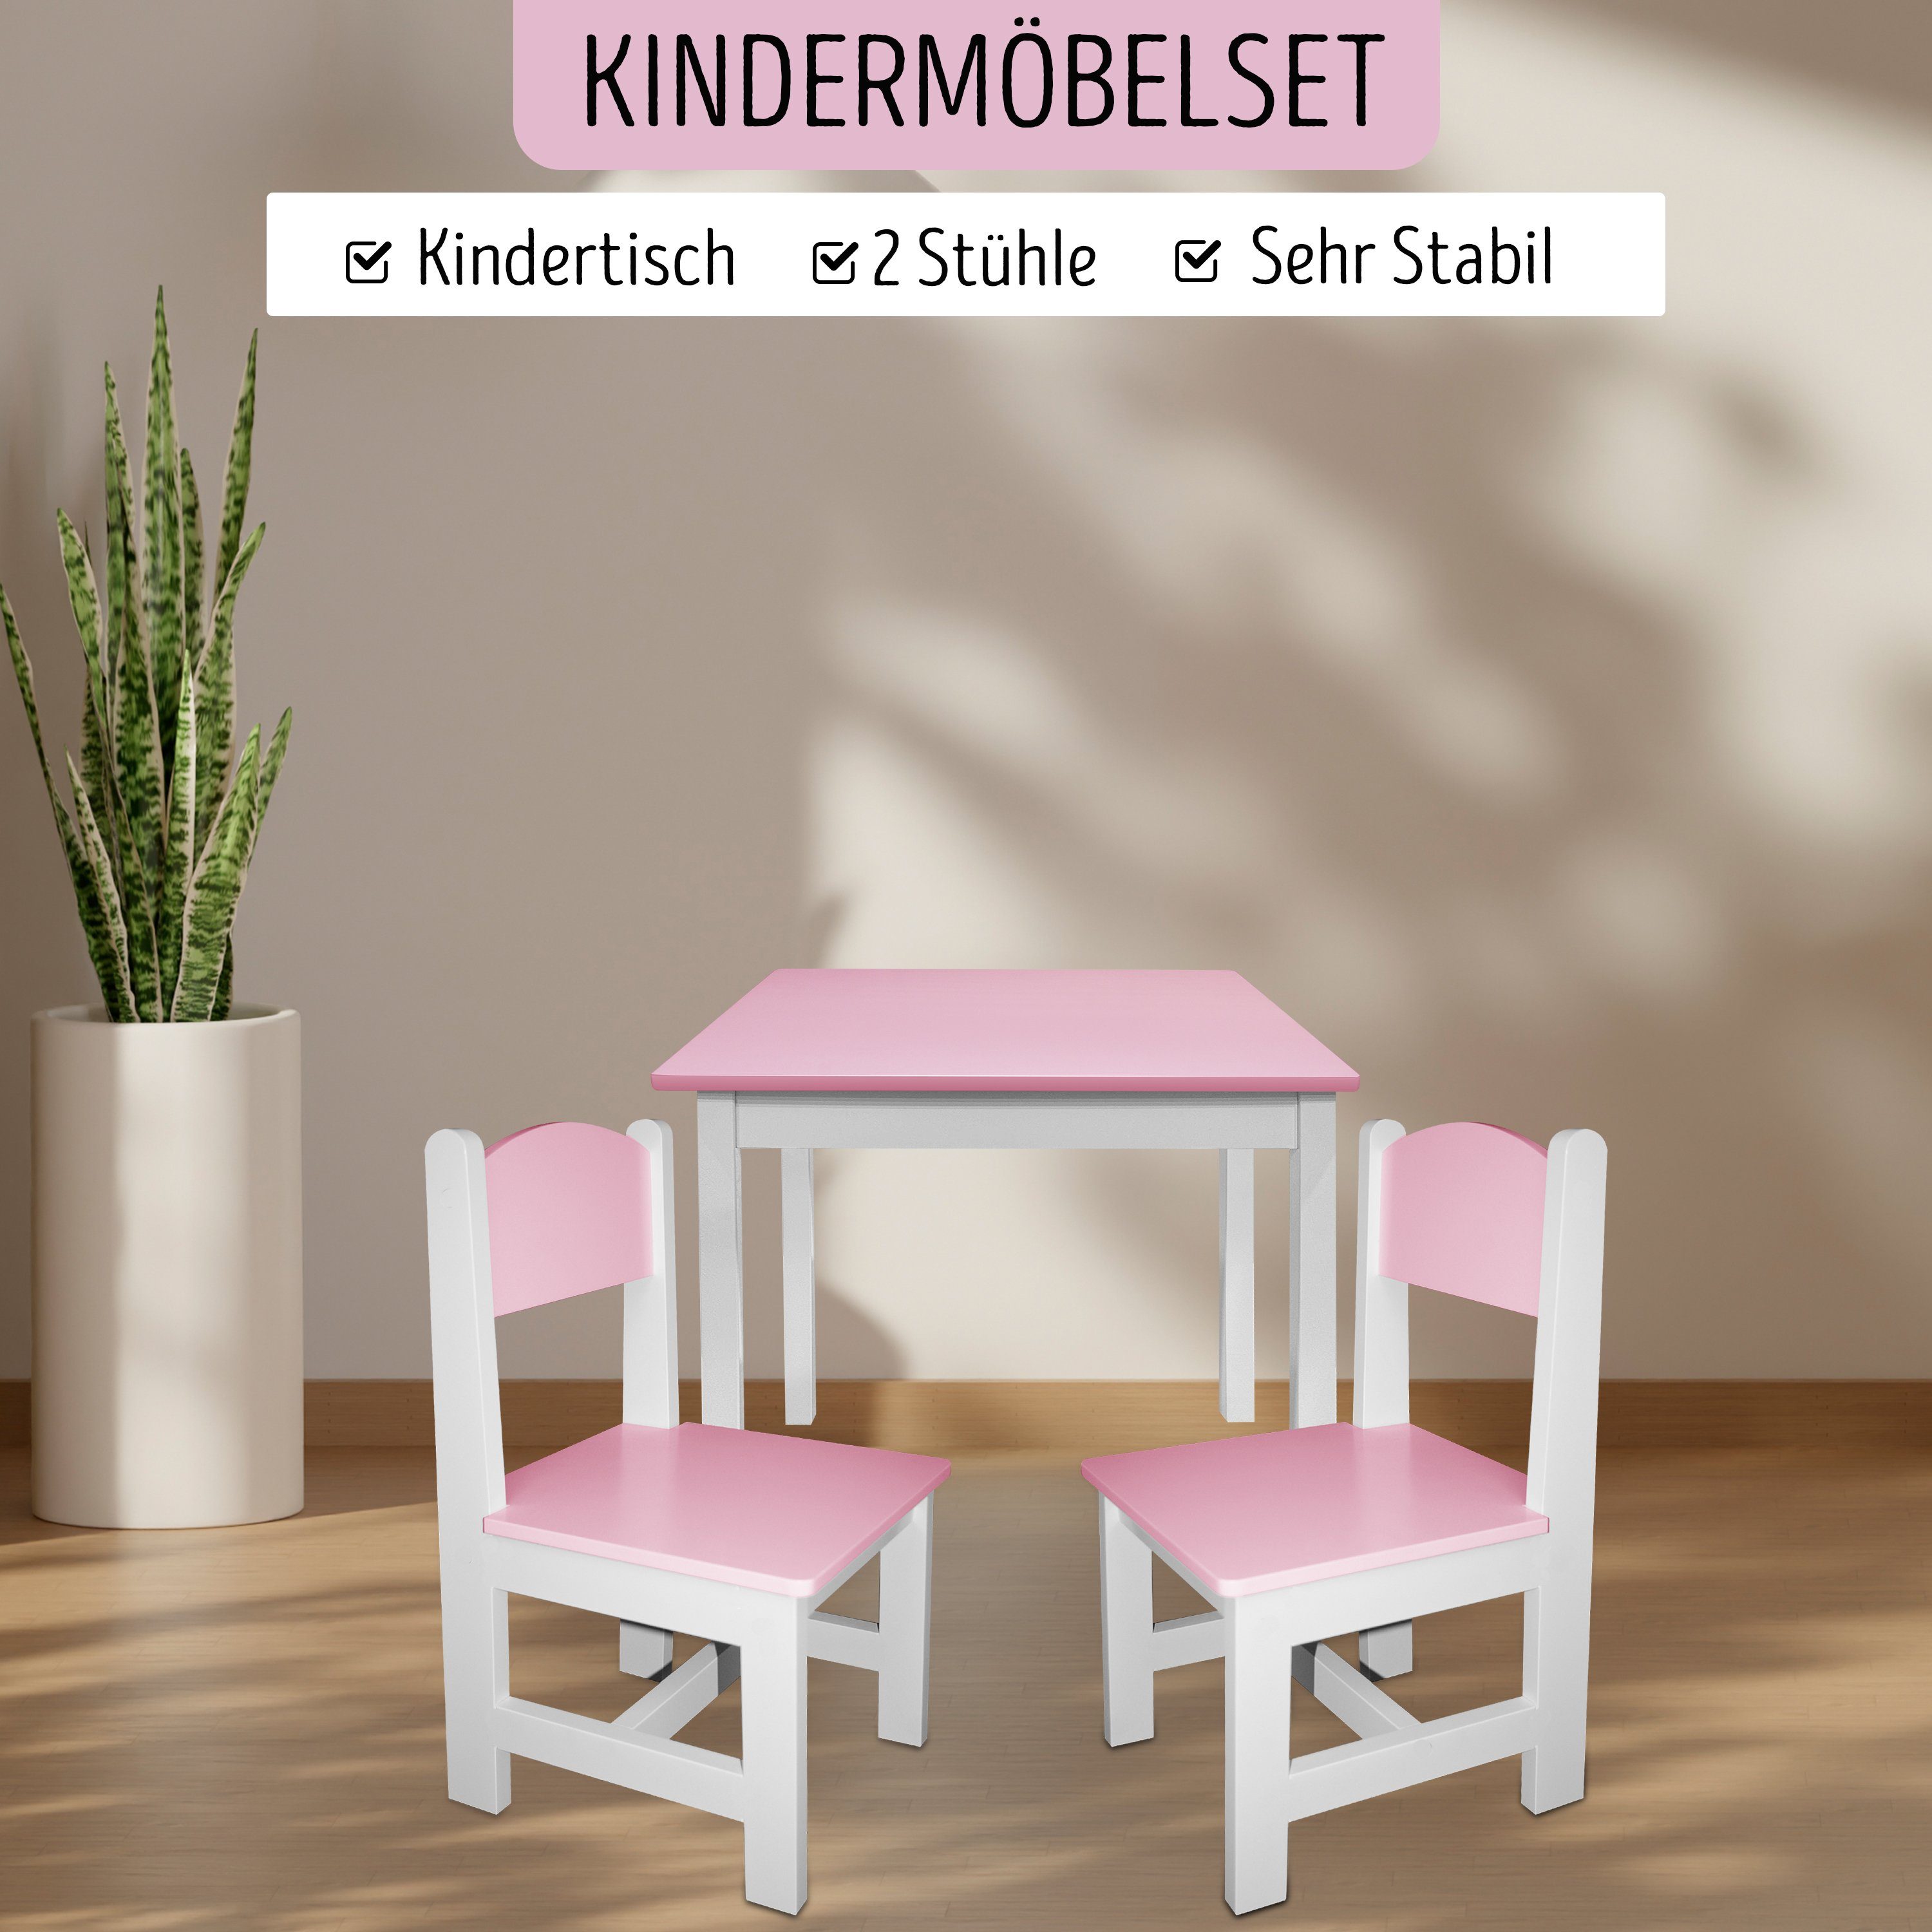 habeig Kindersitzgruppe Kindertisch Kindermöbelset 60x50x50cm Rosa+Weiß 2 Hocker & Maltisch Stühle